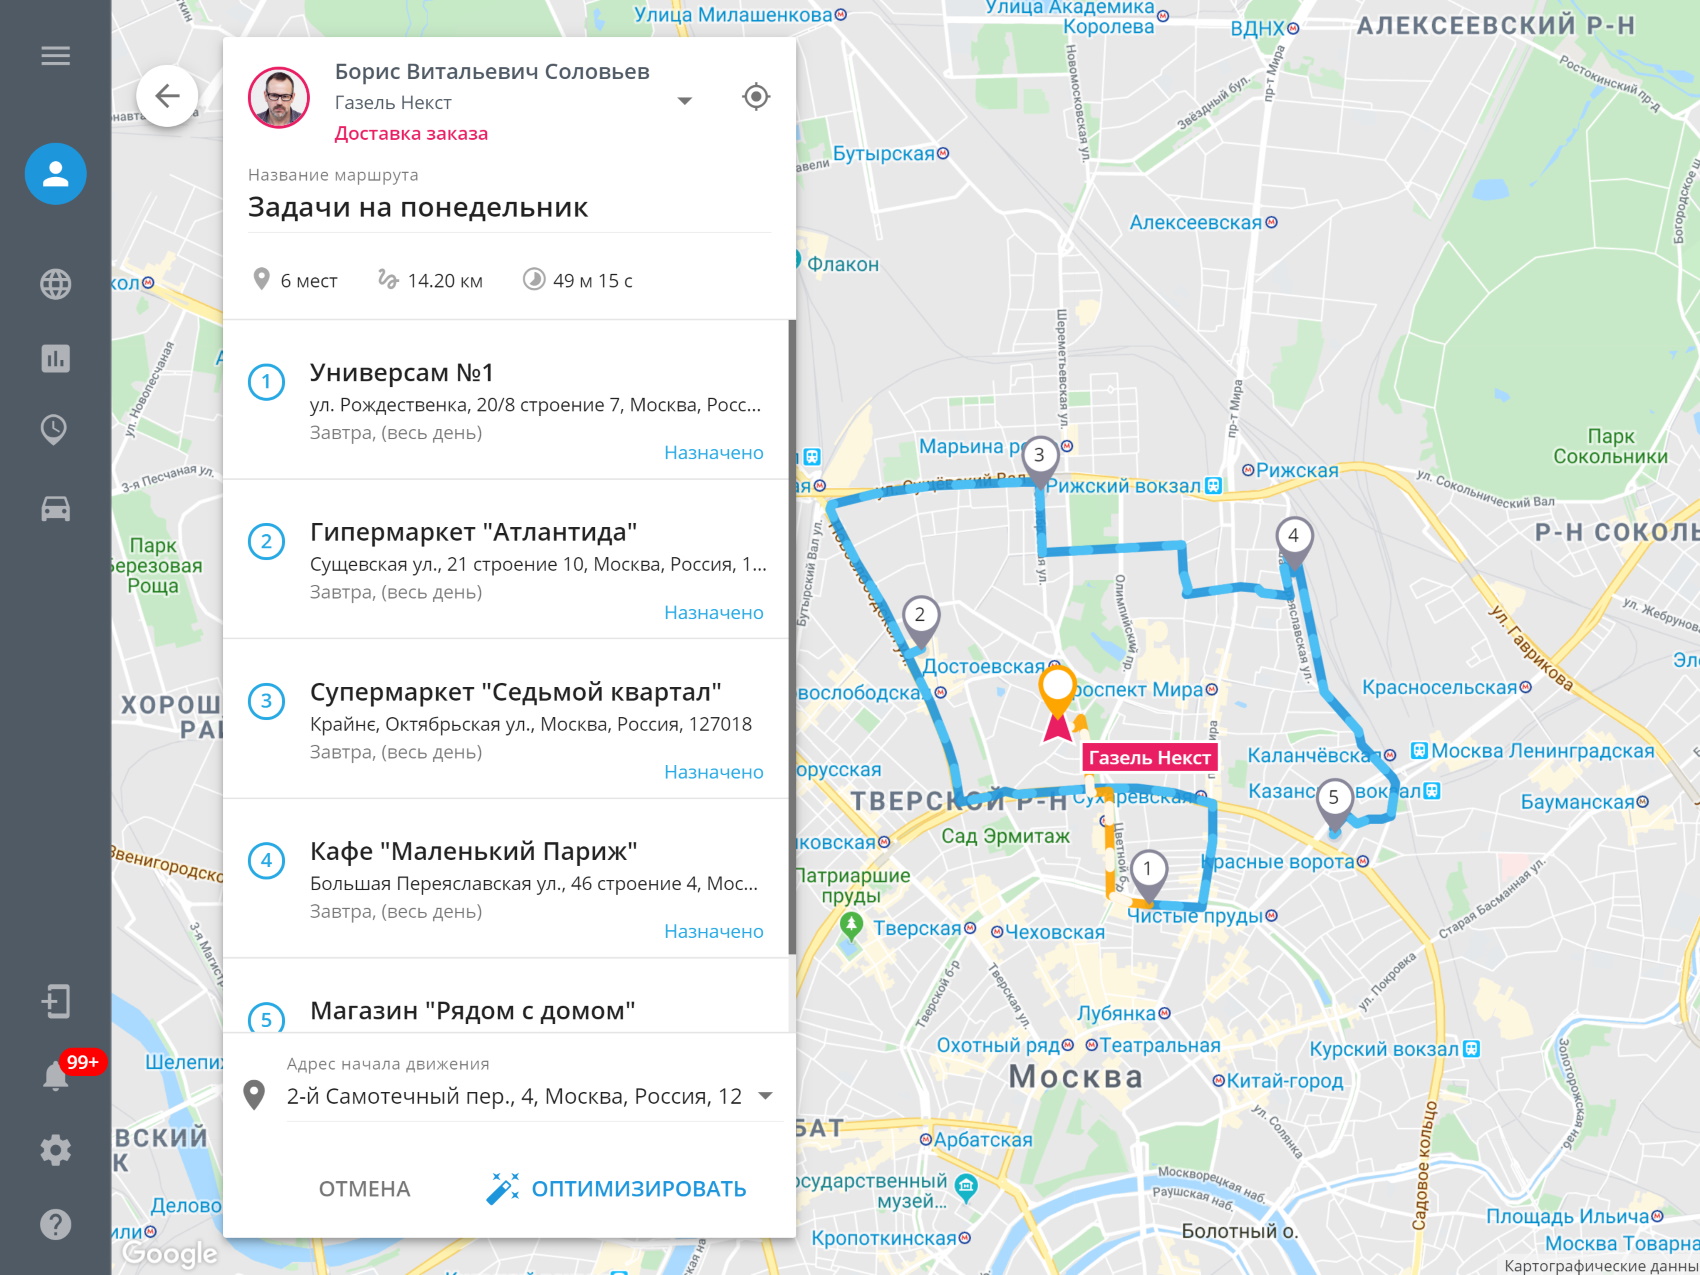 Построить маршрут на карте москвы общественным транспортом